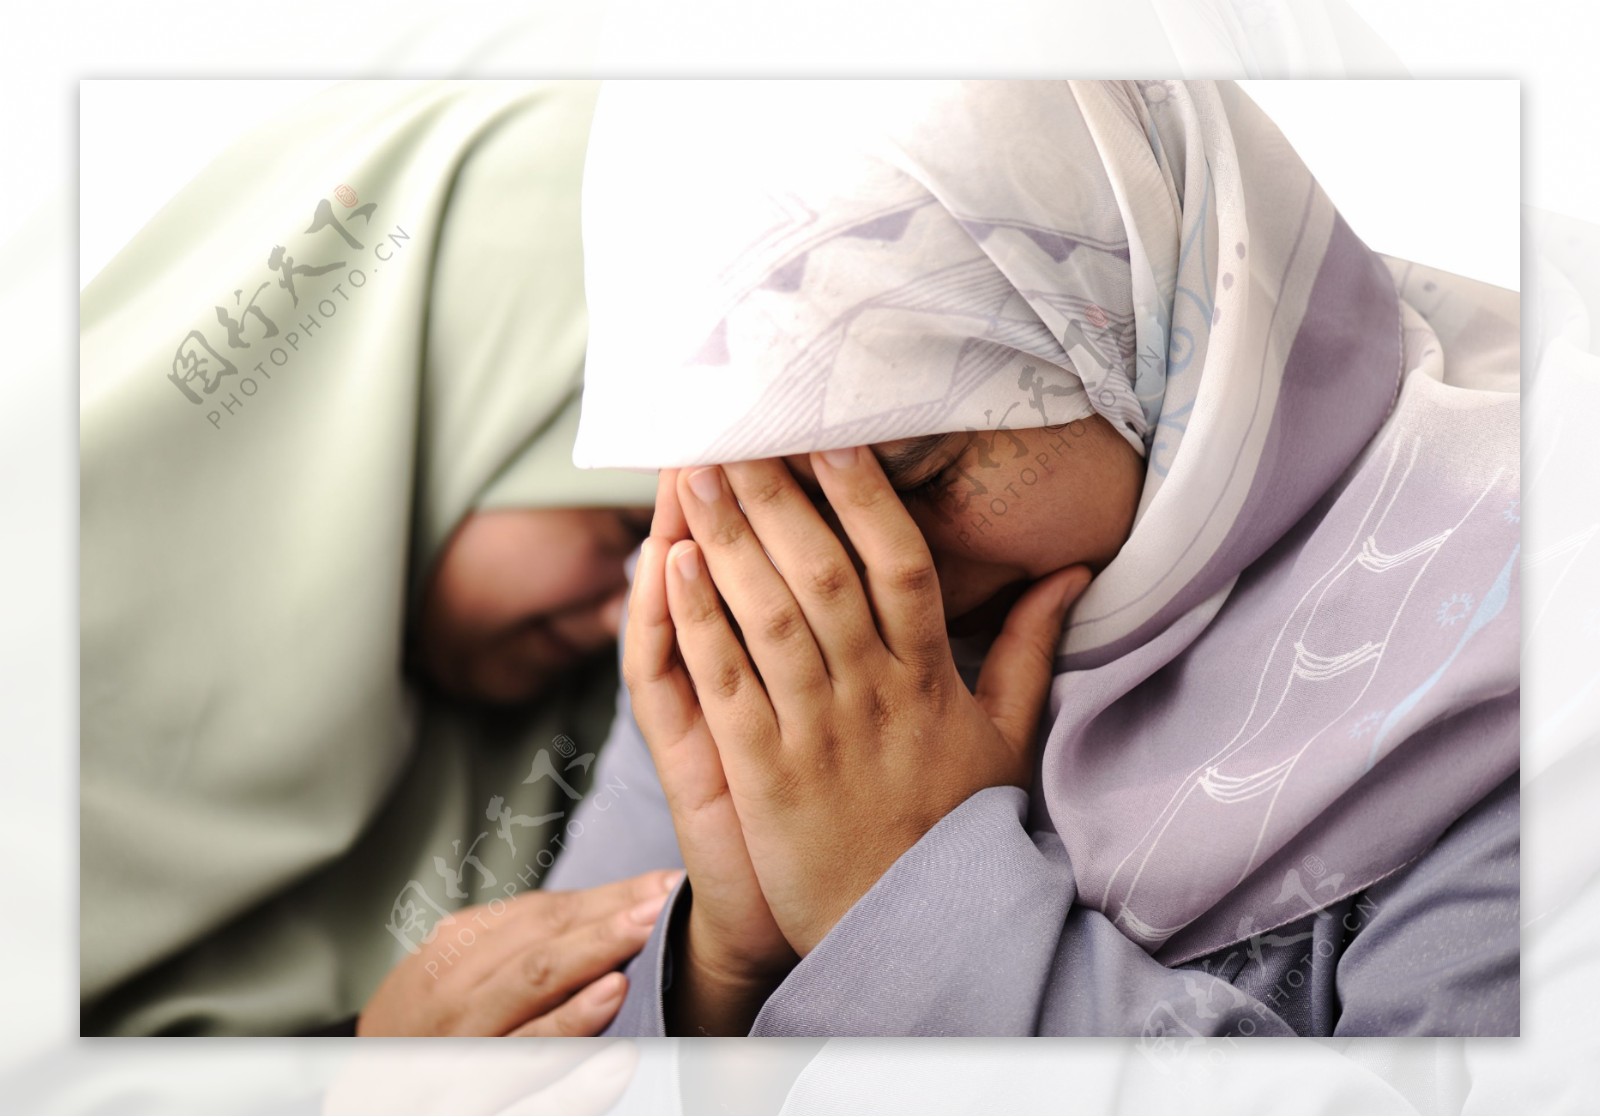 哭泣的中东女性图片